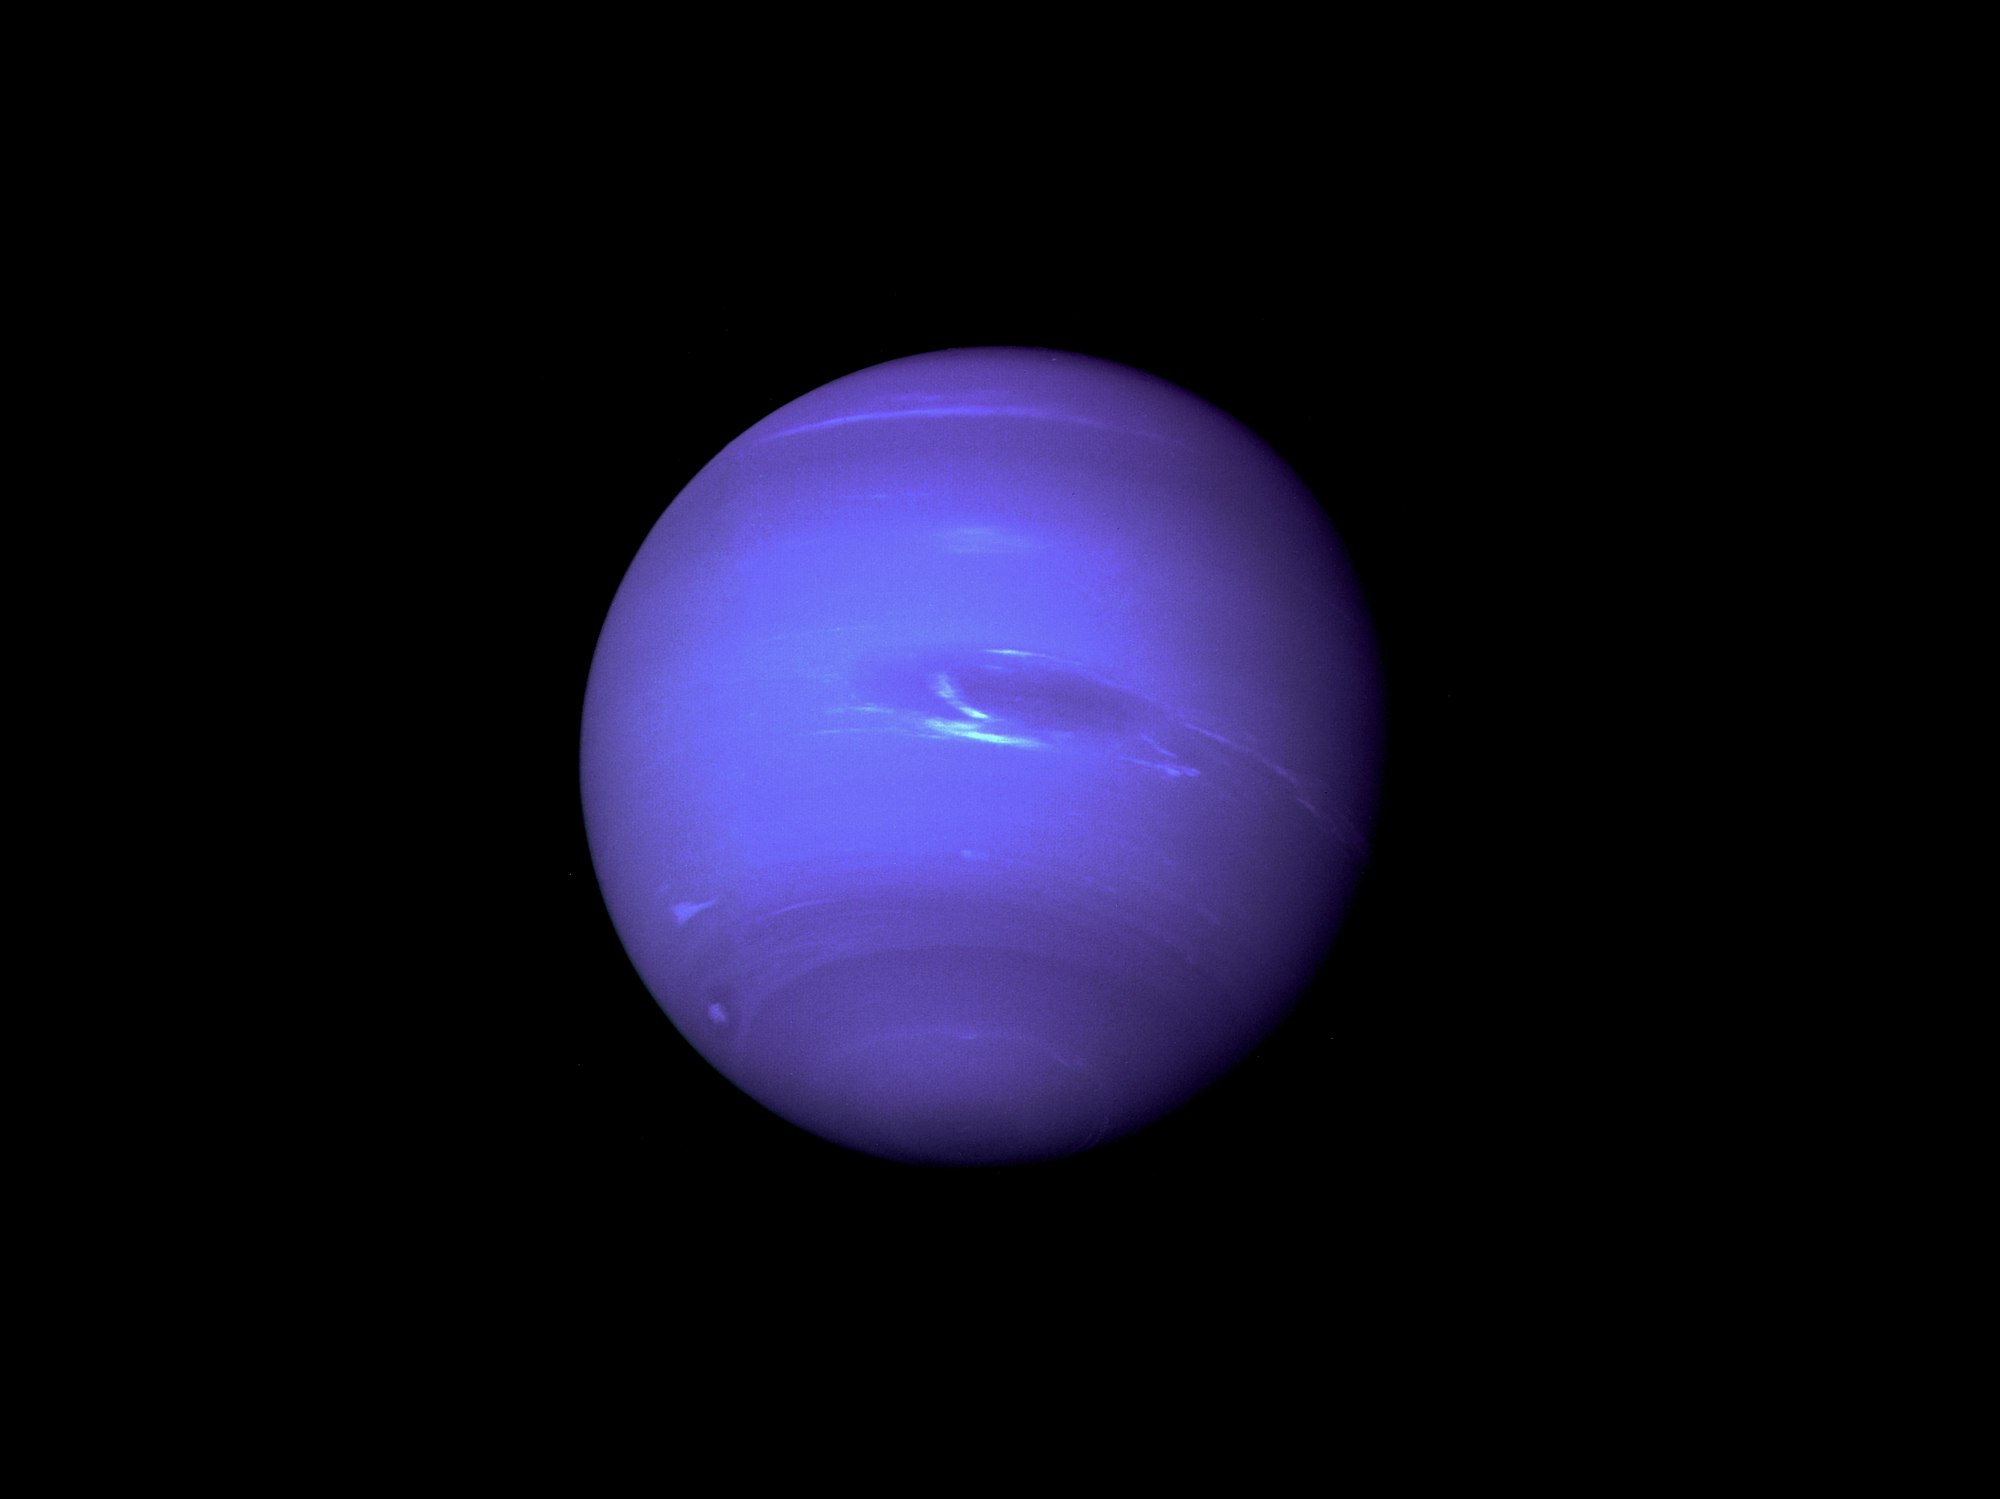 Fakta om Neptun